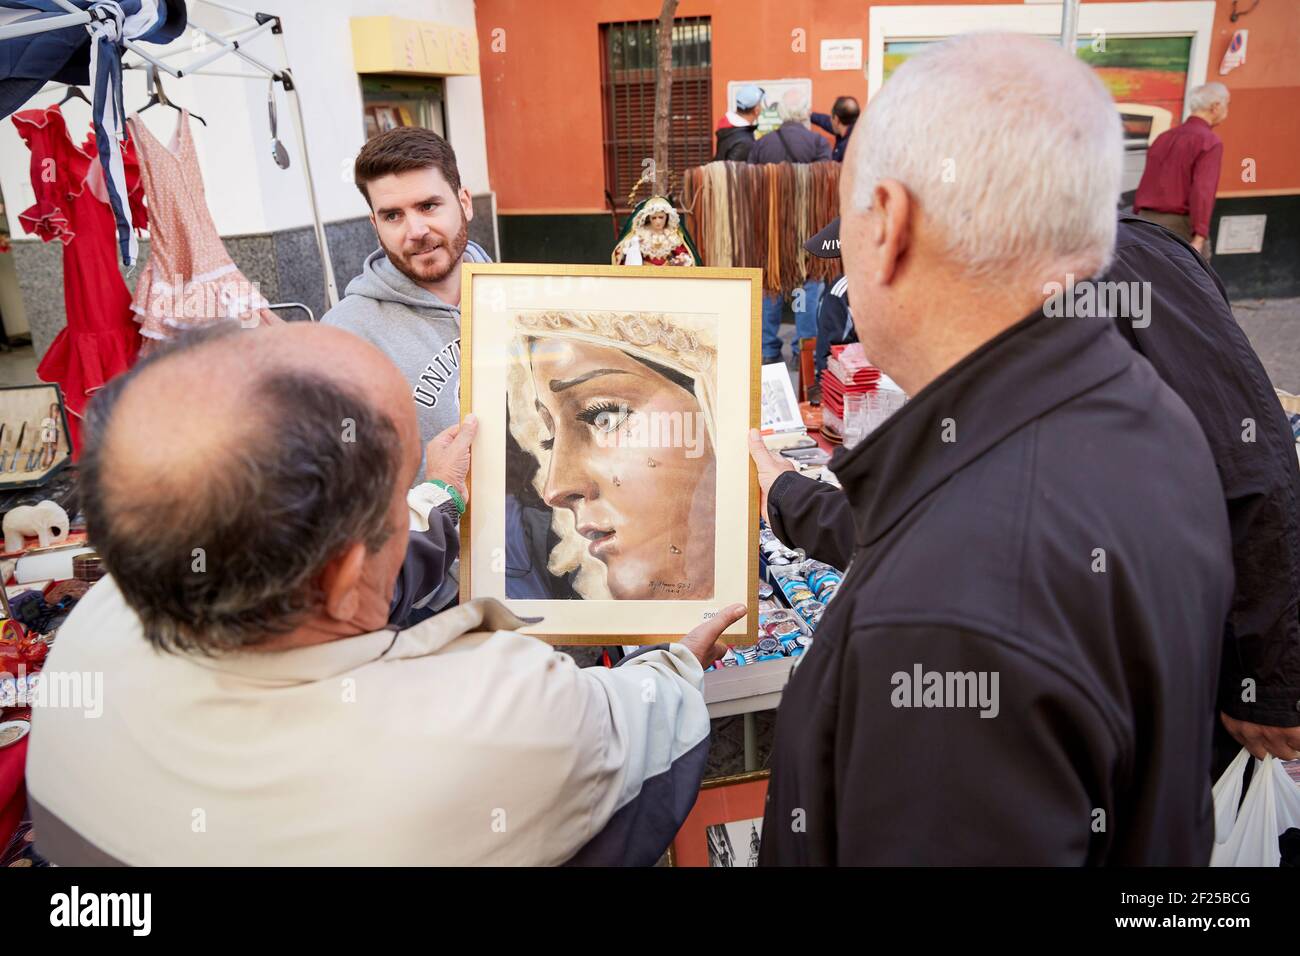 Gente mirando la imagen, el mercado callejero más antiguo de Sevilla, Mercadillo de los Jueves, mercado de jueves, , Sevilla, Andalucía, España Foto de stock